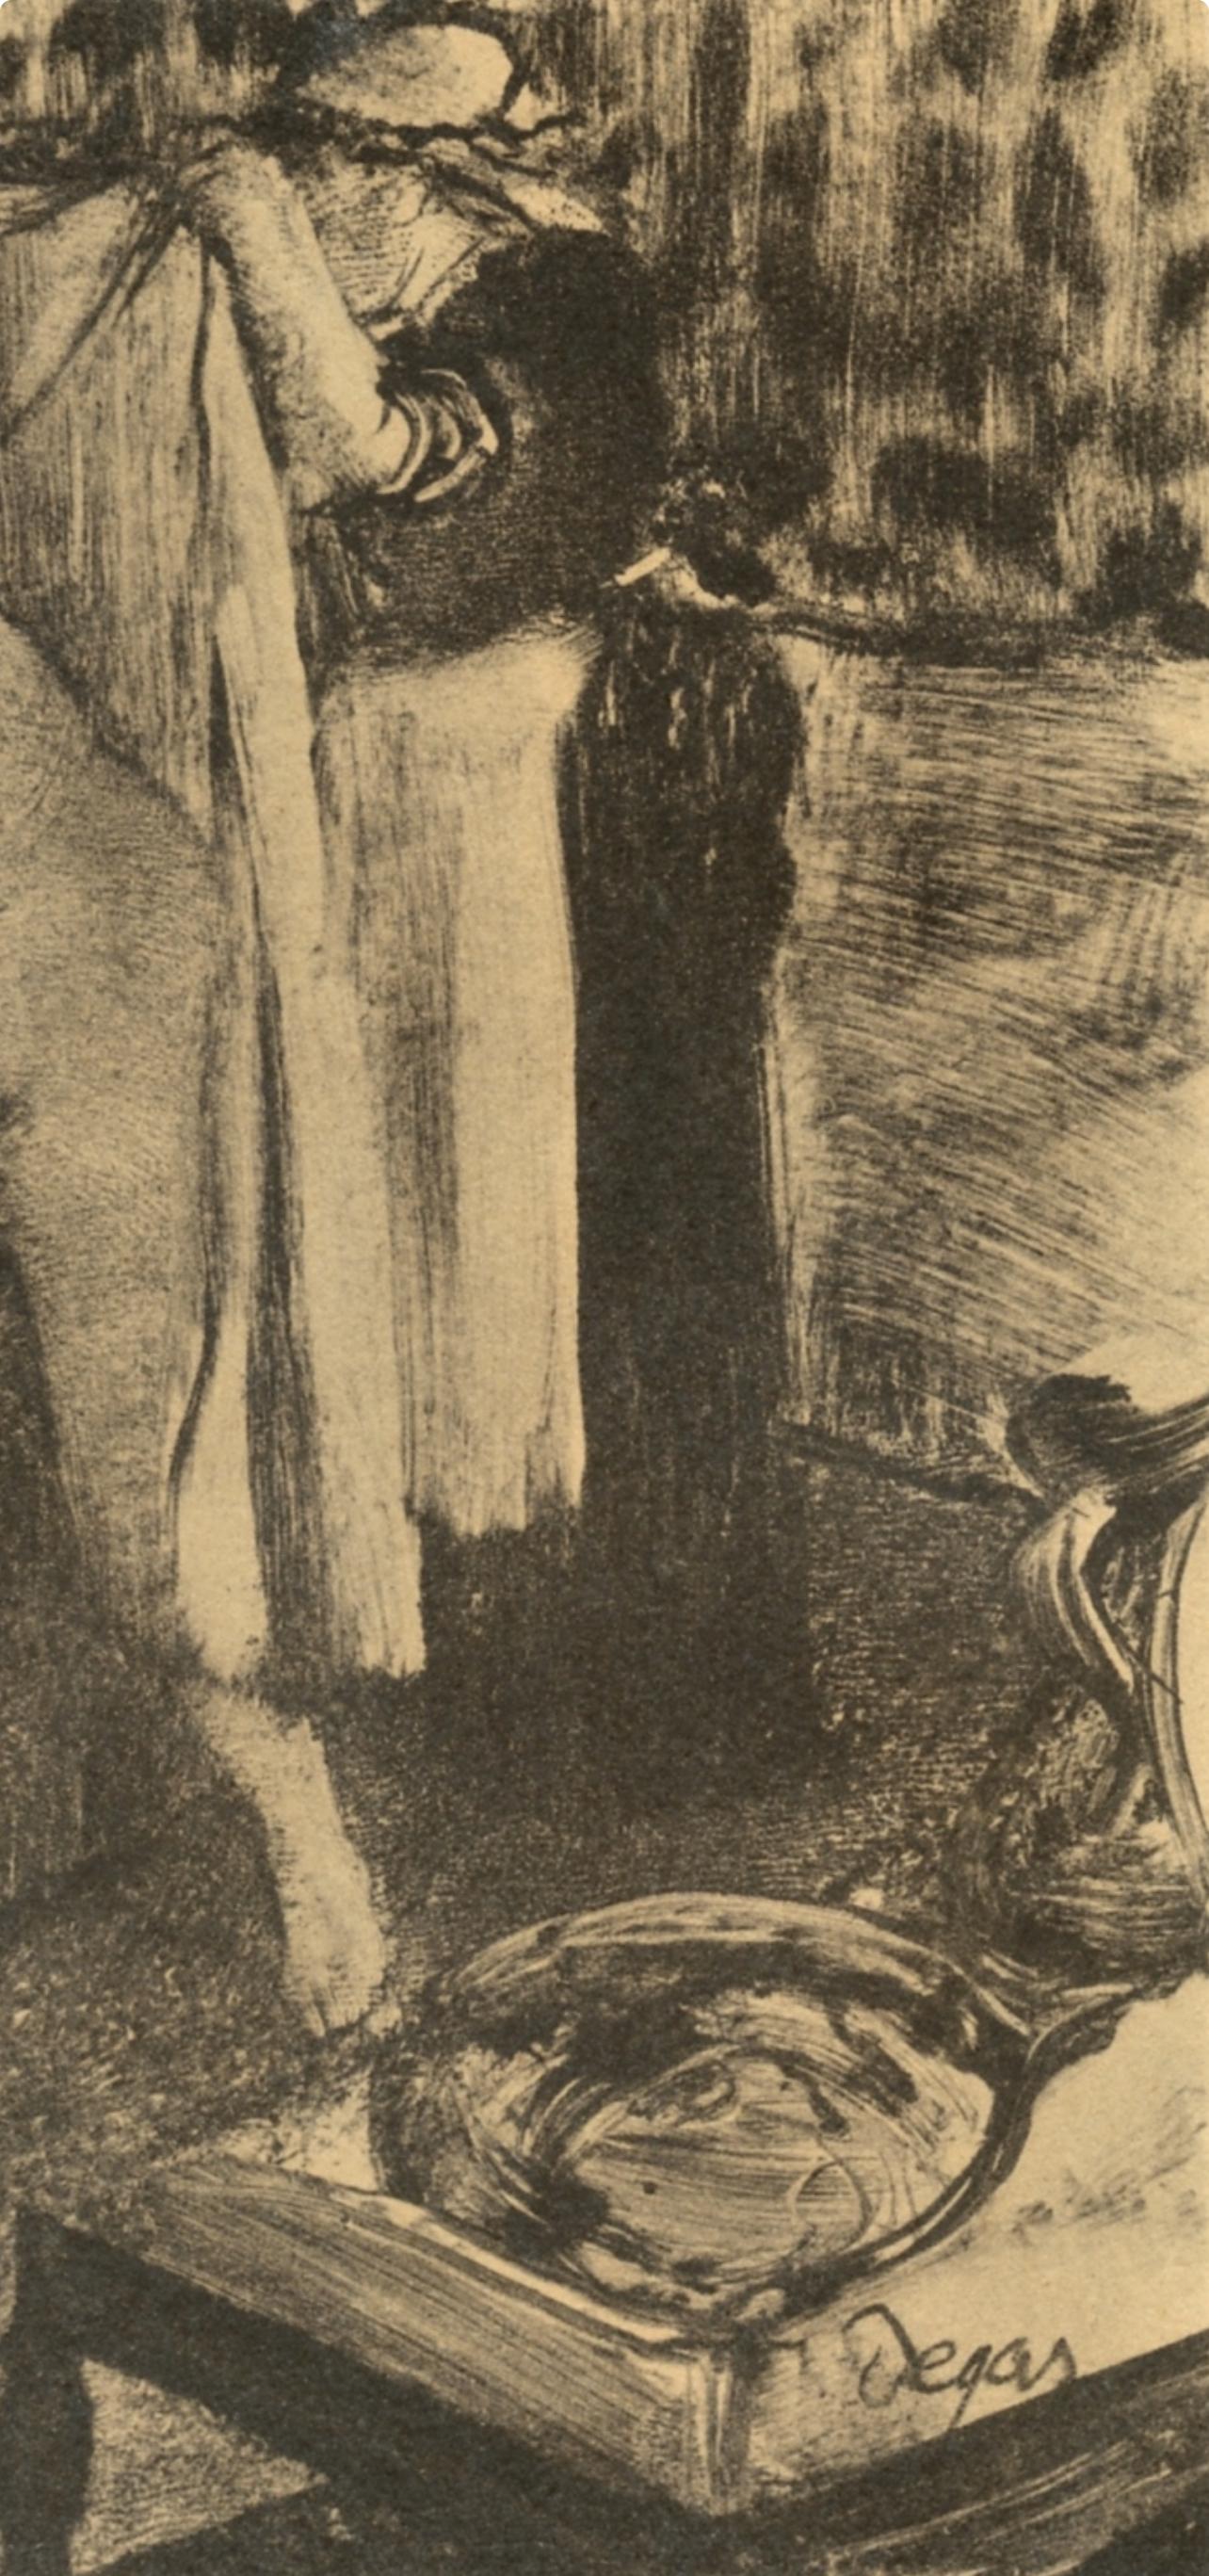 Degas, Femme sortant du bain, Les Monotypes (after) - Impressionist Print by Edgar Degas